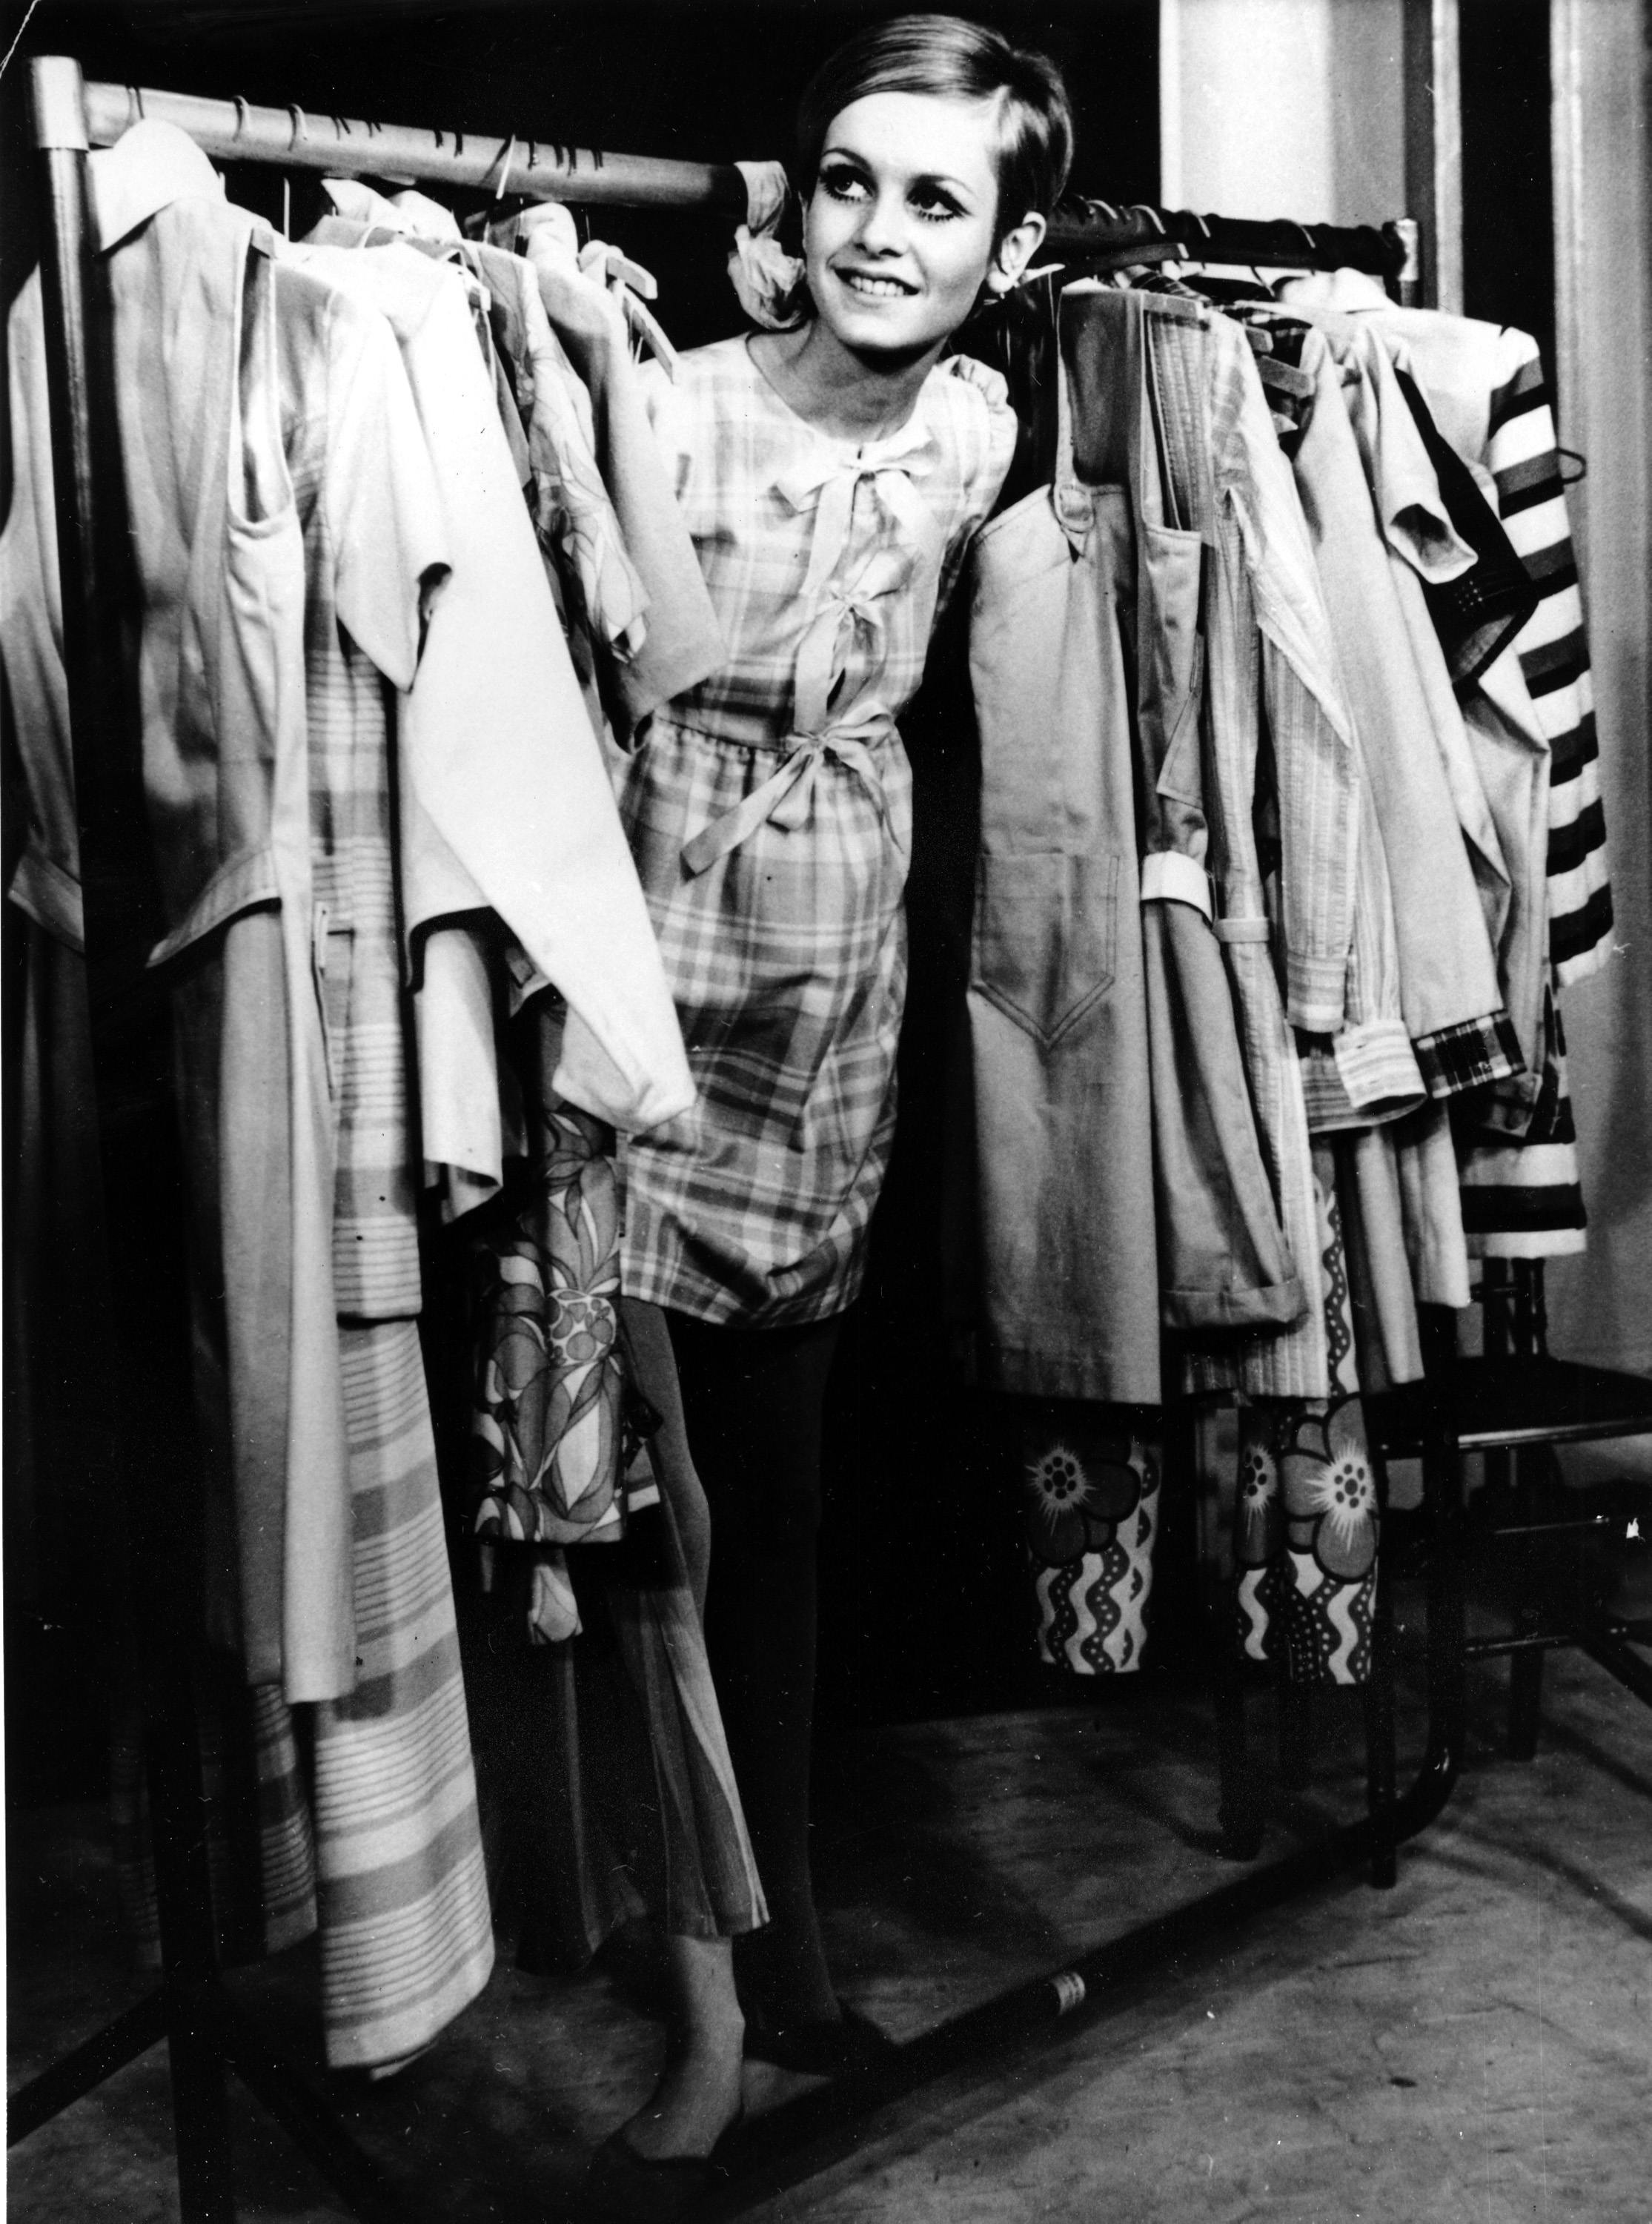 siglo xx plano general decada 1960 plano individual mujeres personajes internacionales modelos blanco y negro moda londres furniture person human indoors room clothing apparel closet